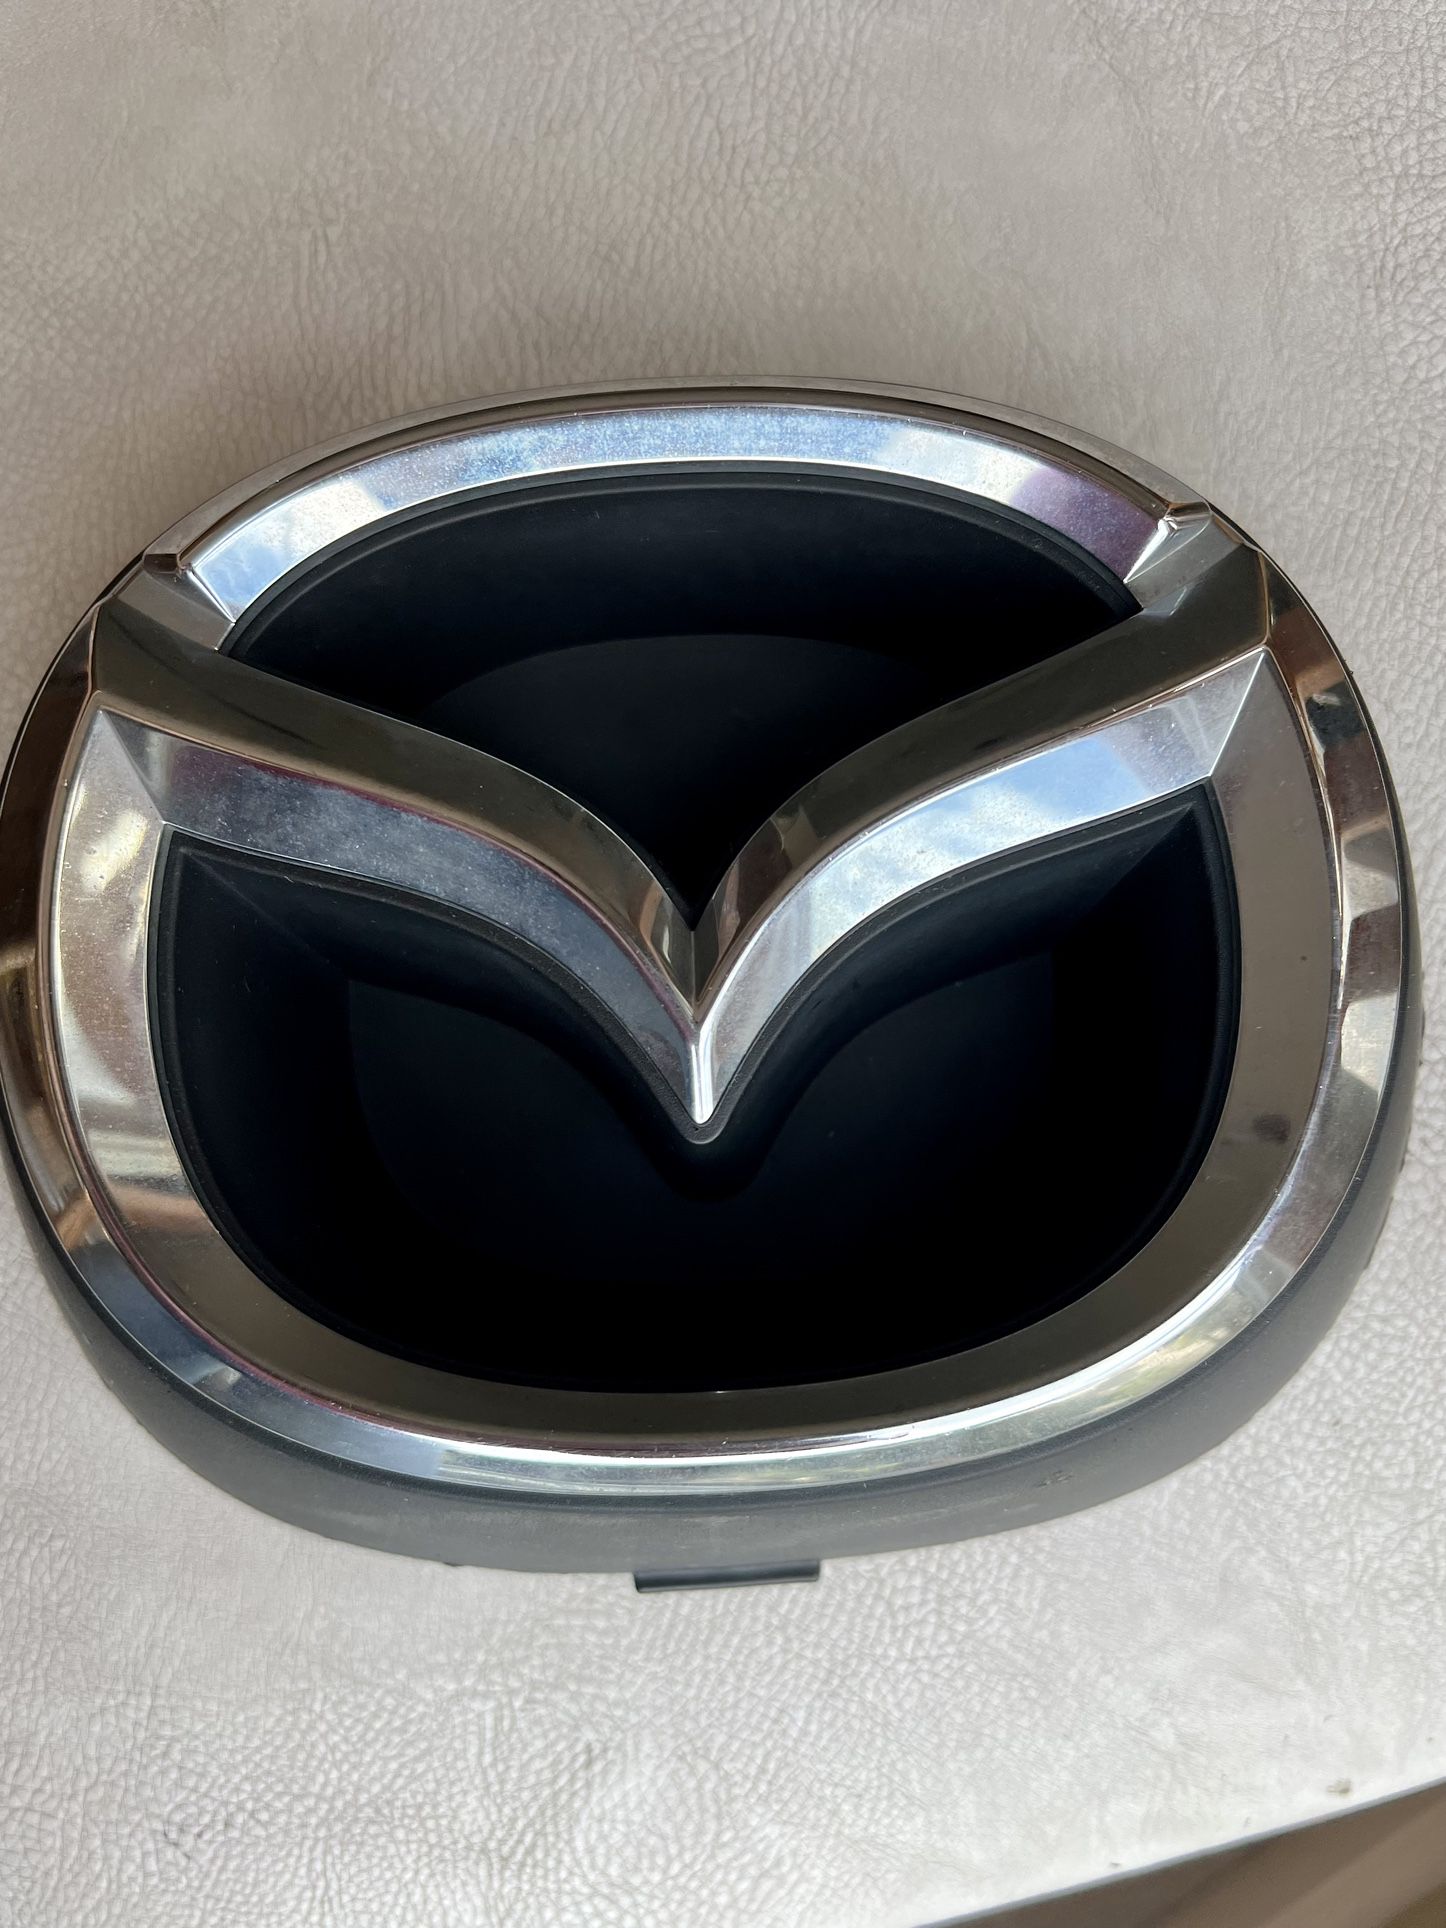 Mazda Emblem